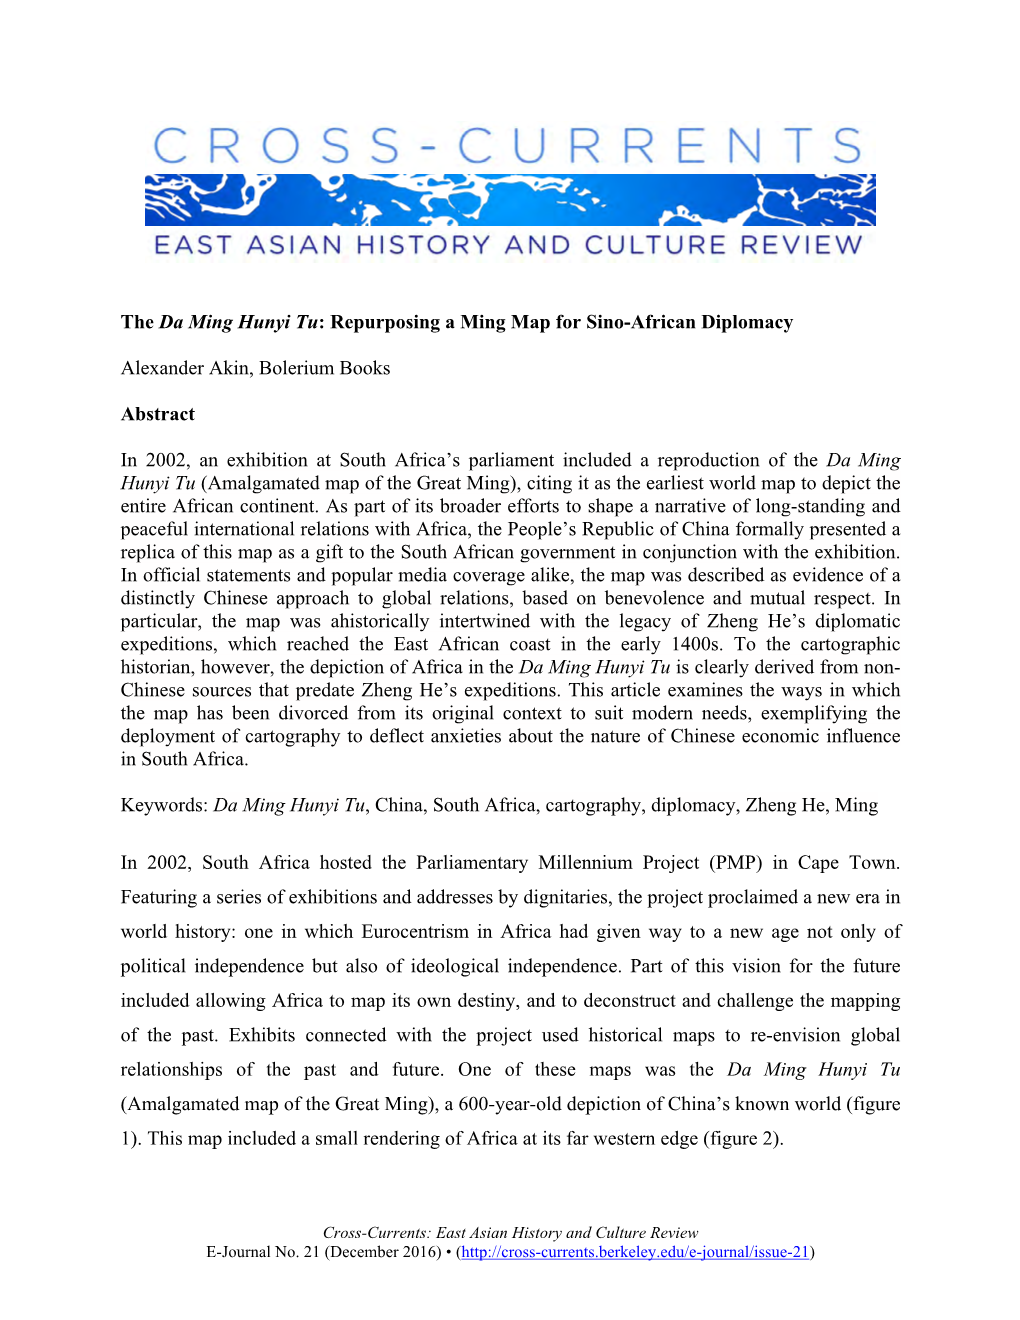 The Da Ming Hunyi Tu: Repurposing a Ming Map for Sino-African Diplomacy